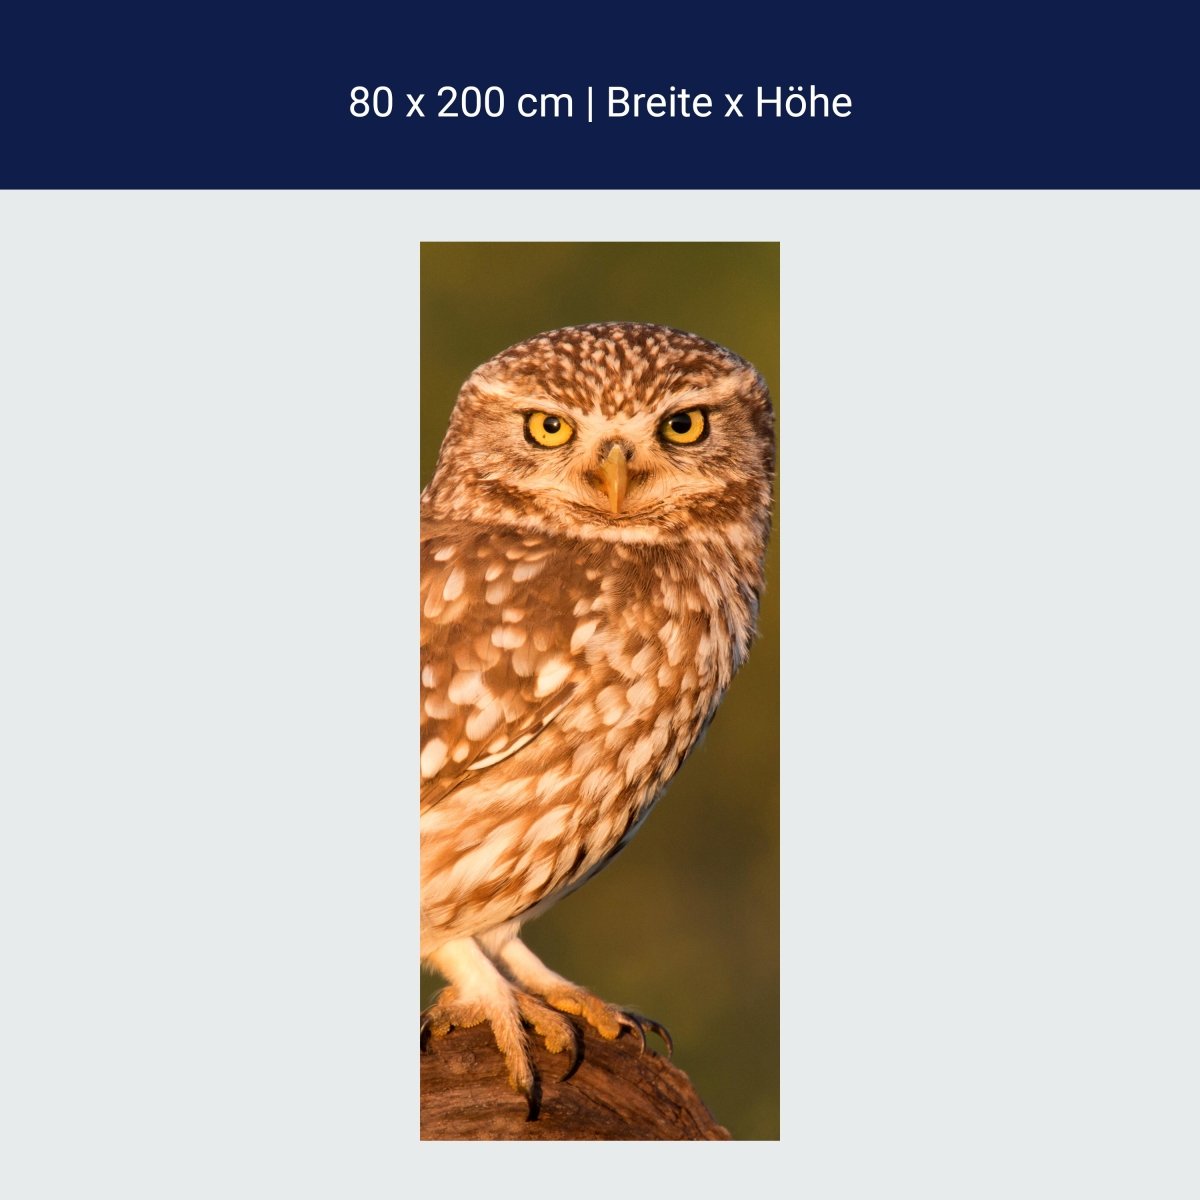 Little owl shower screen, tree trunk M1026